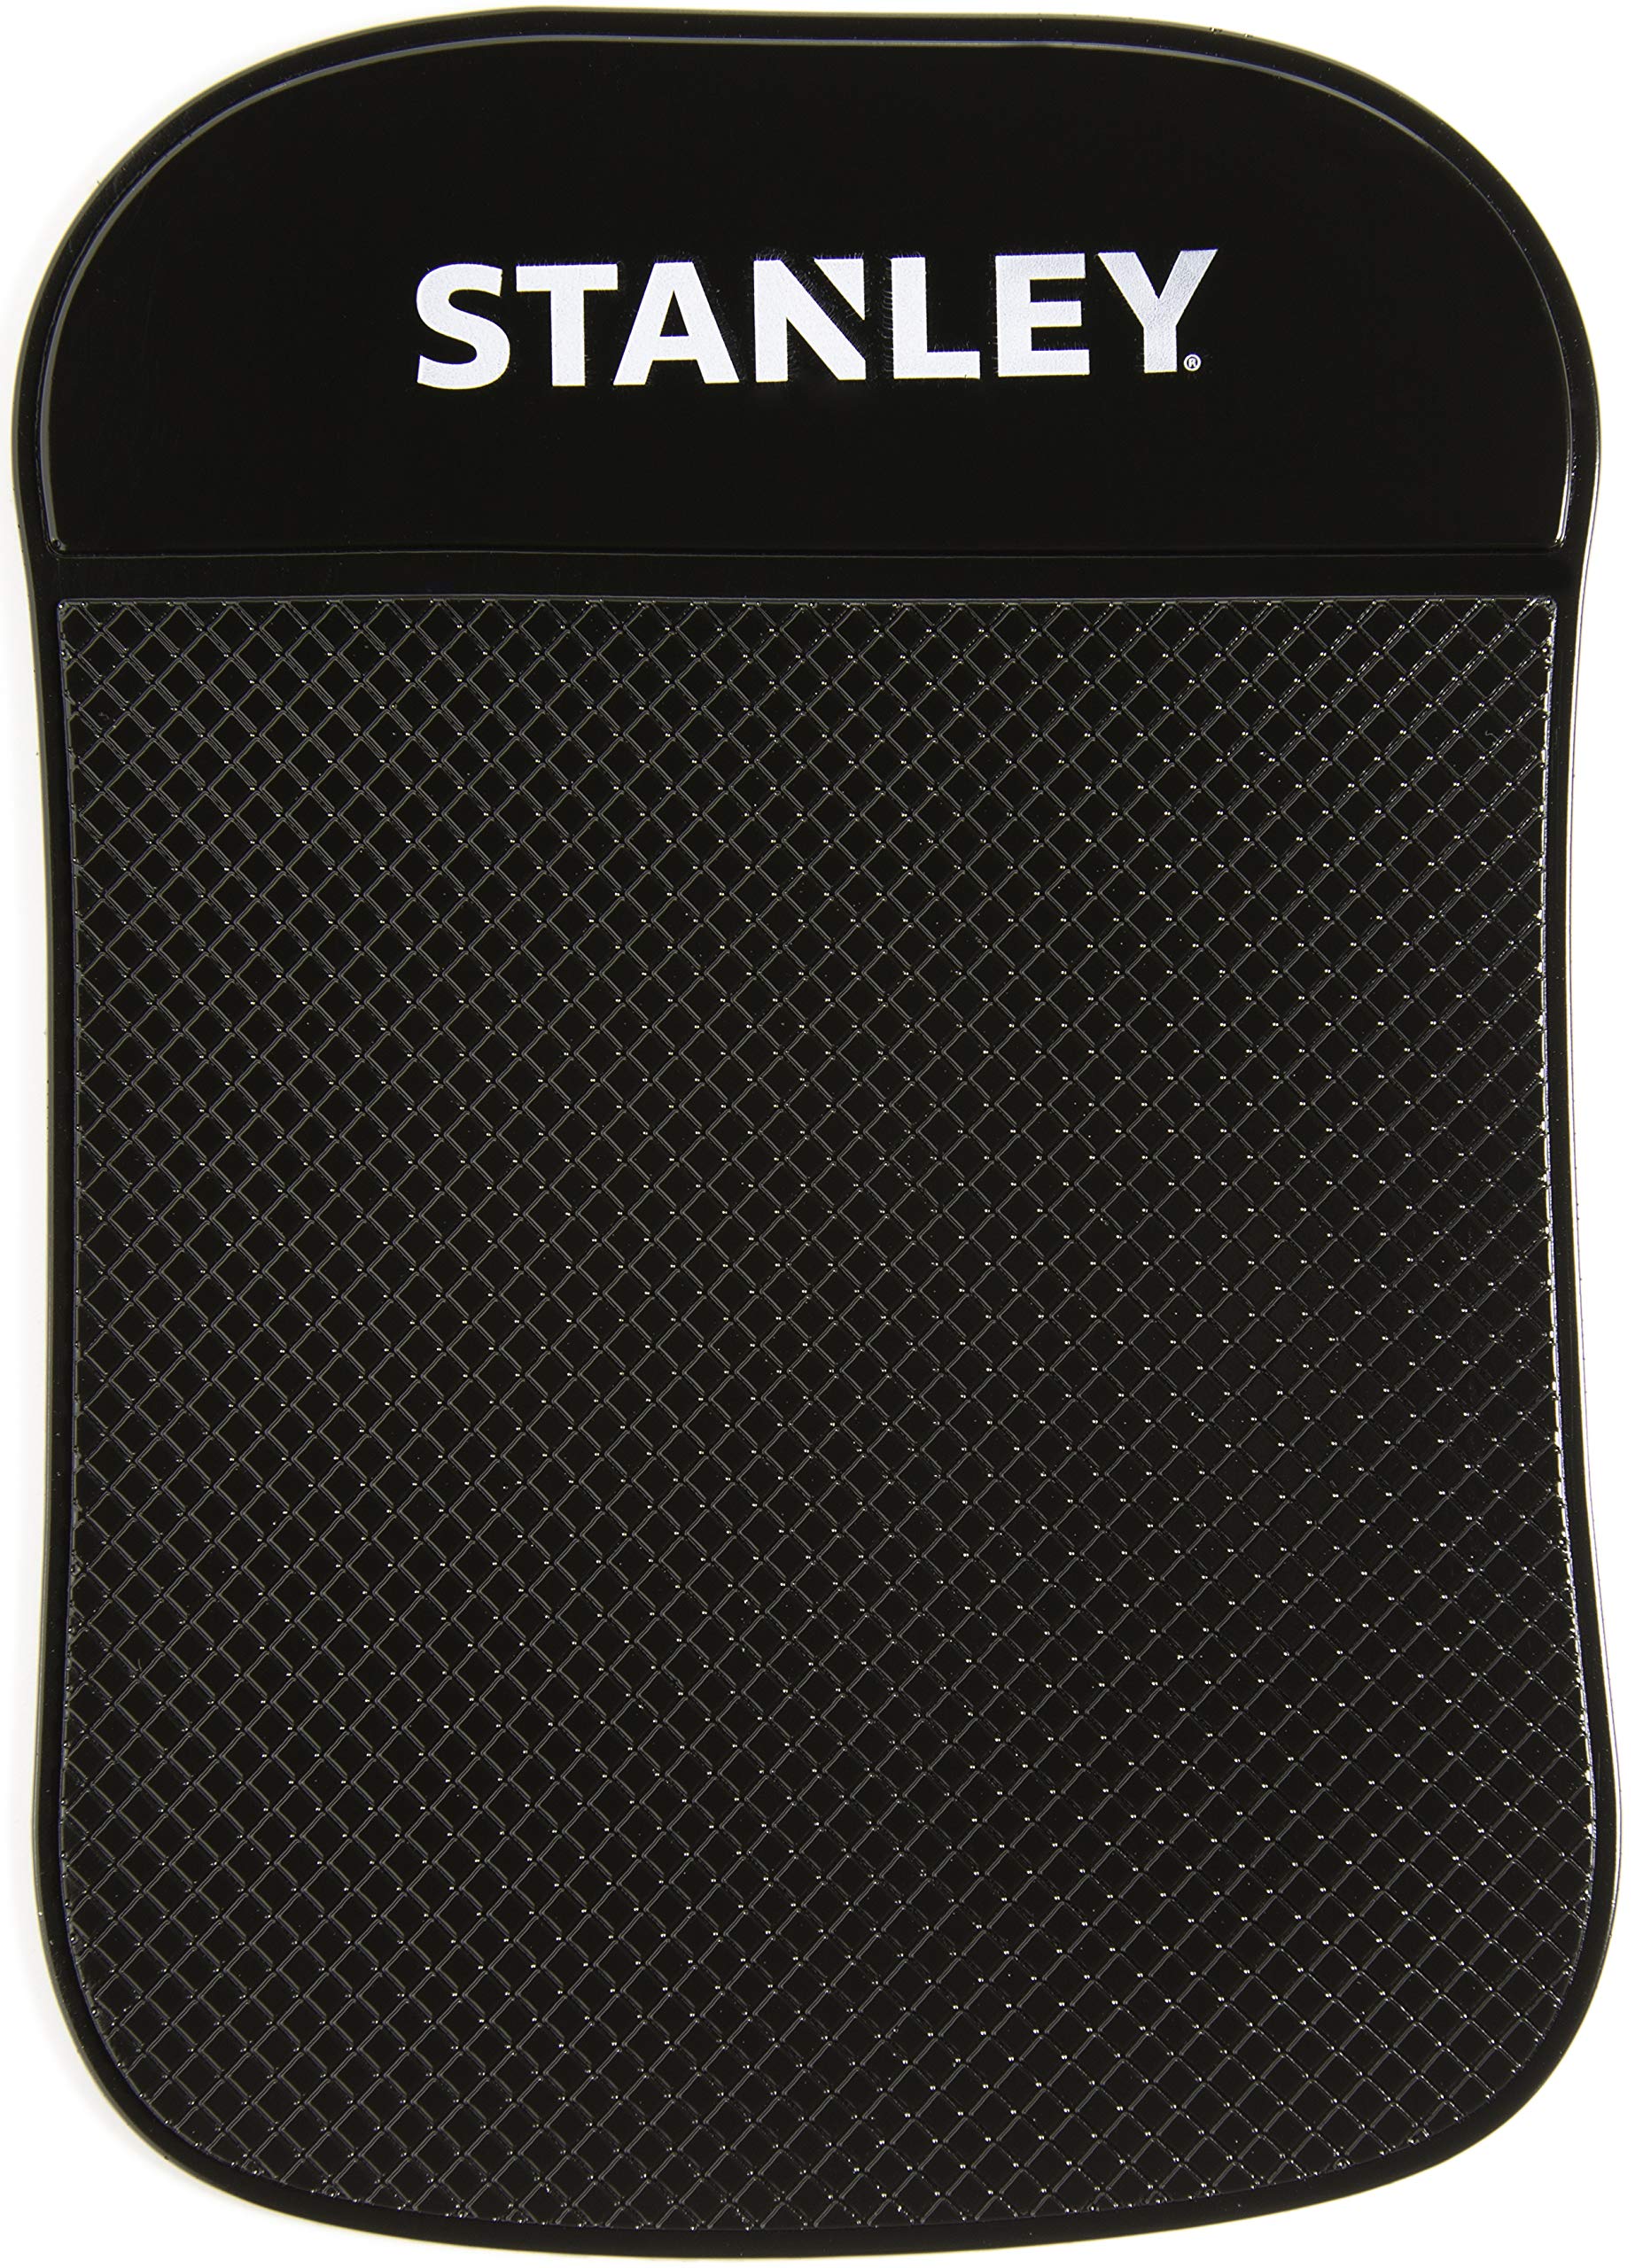 STANLEY Sticky Pad - Universal-Armaturenbrettmatte mit Extra Starkem Anti-Slip-Griff für Handy, Tablet, GPS, iPod, Schlüssel oder Sonnenbrille - Ideal für Auto, Wohnmobil, Golfwagen, Boot und mehr von Stanley